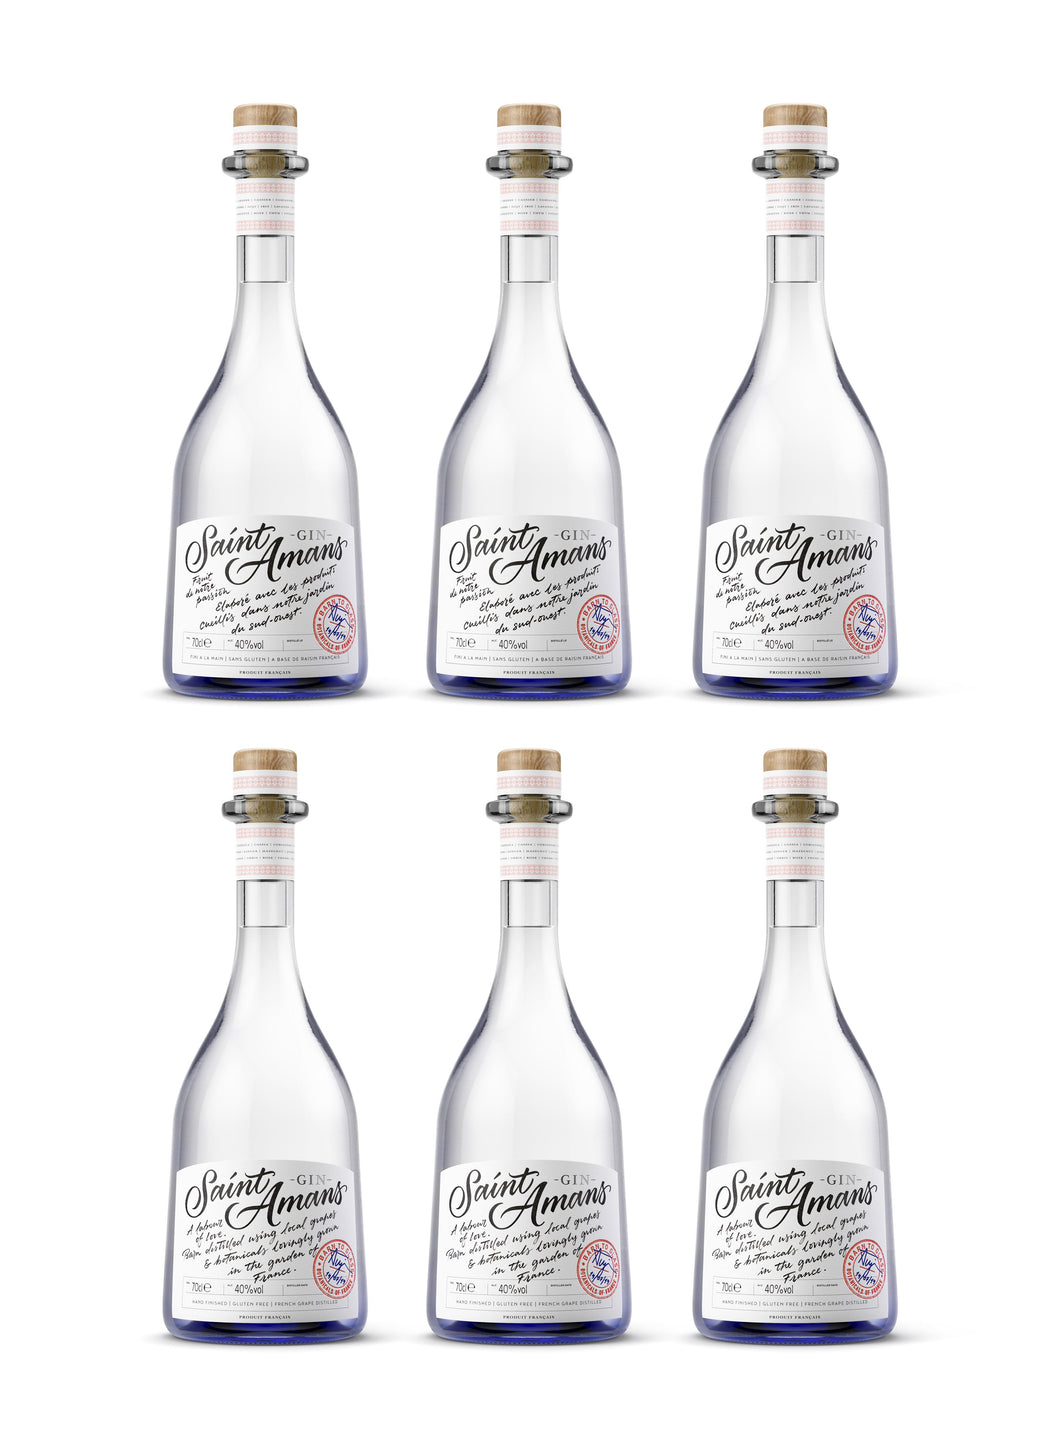 Six bottles of our premium and aromatic Original gin in their classic blue bottles. French: Six bouteilles de notre Gin Original haut de gamme et aromatique dans leurs bouteilles bleues classiques.